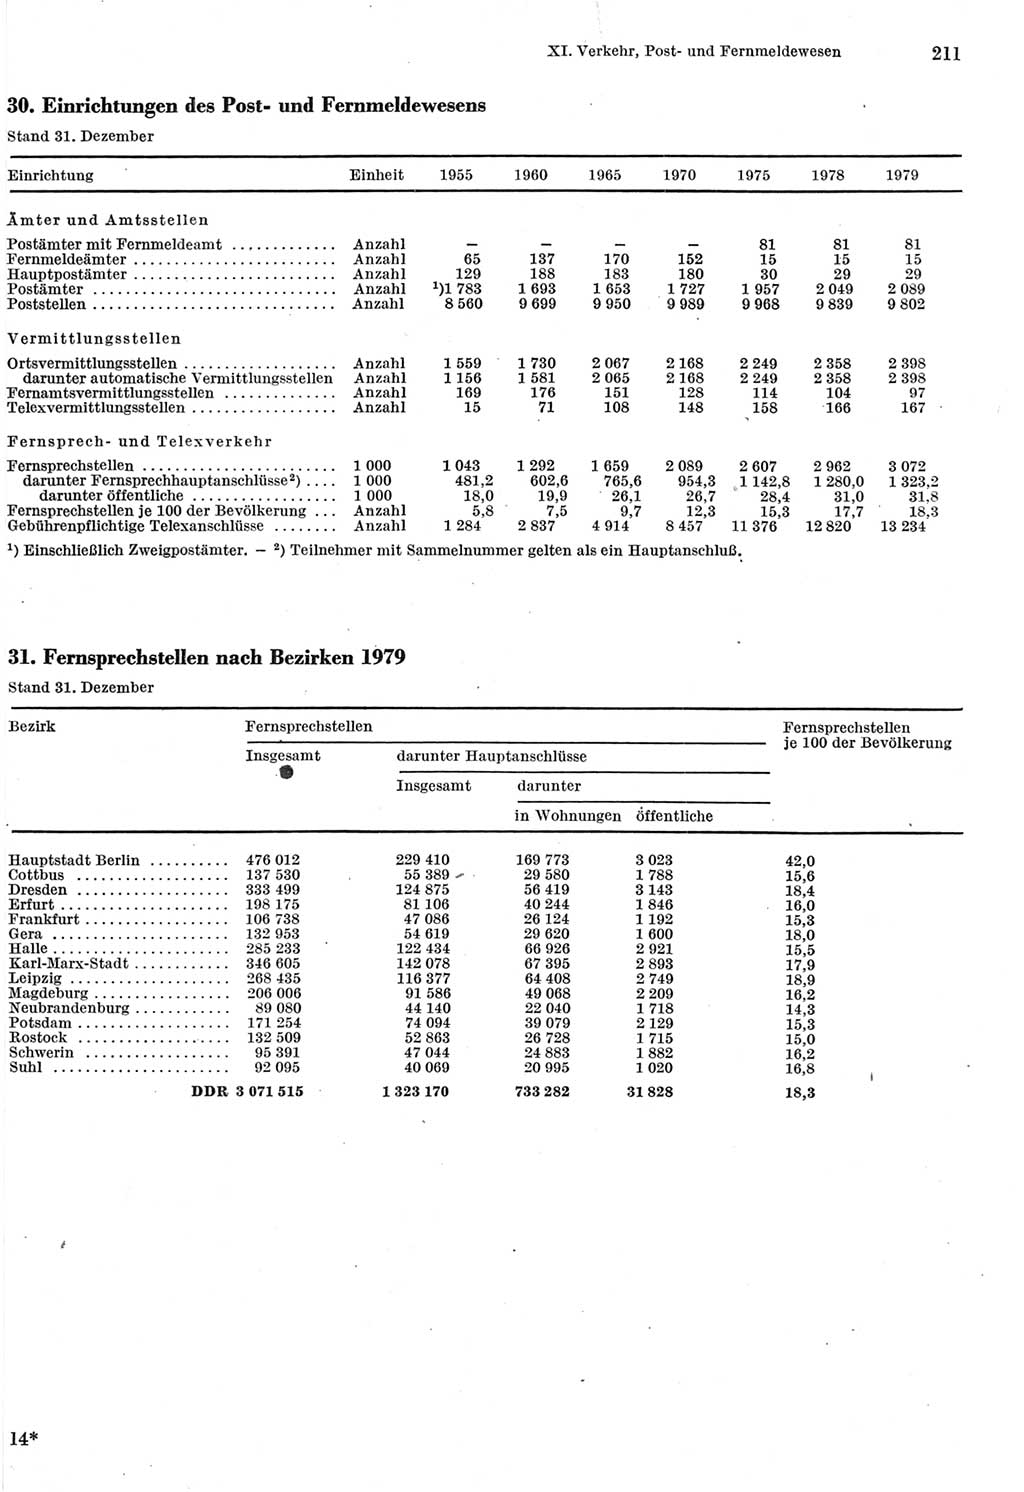 Statistisches Jahrbuch der Deutschen Demokratischen Republik (DDR) 1980, Seite 211 (Stat. Jb. DDR 1980, S. 211)